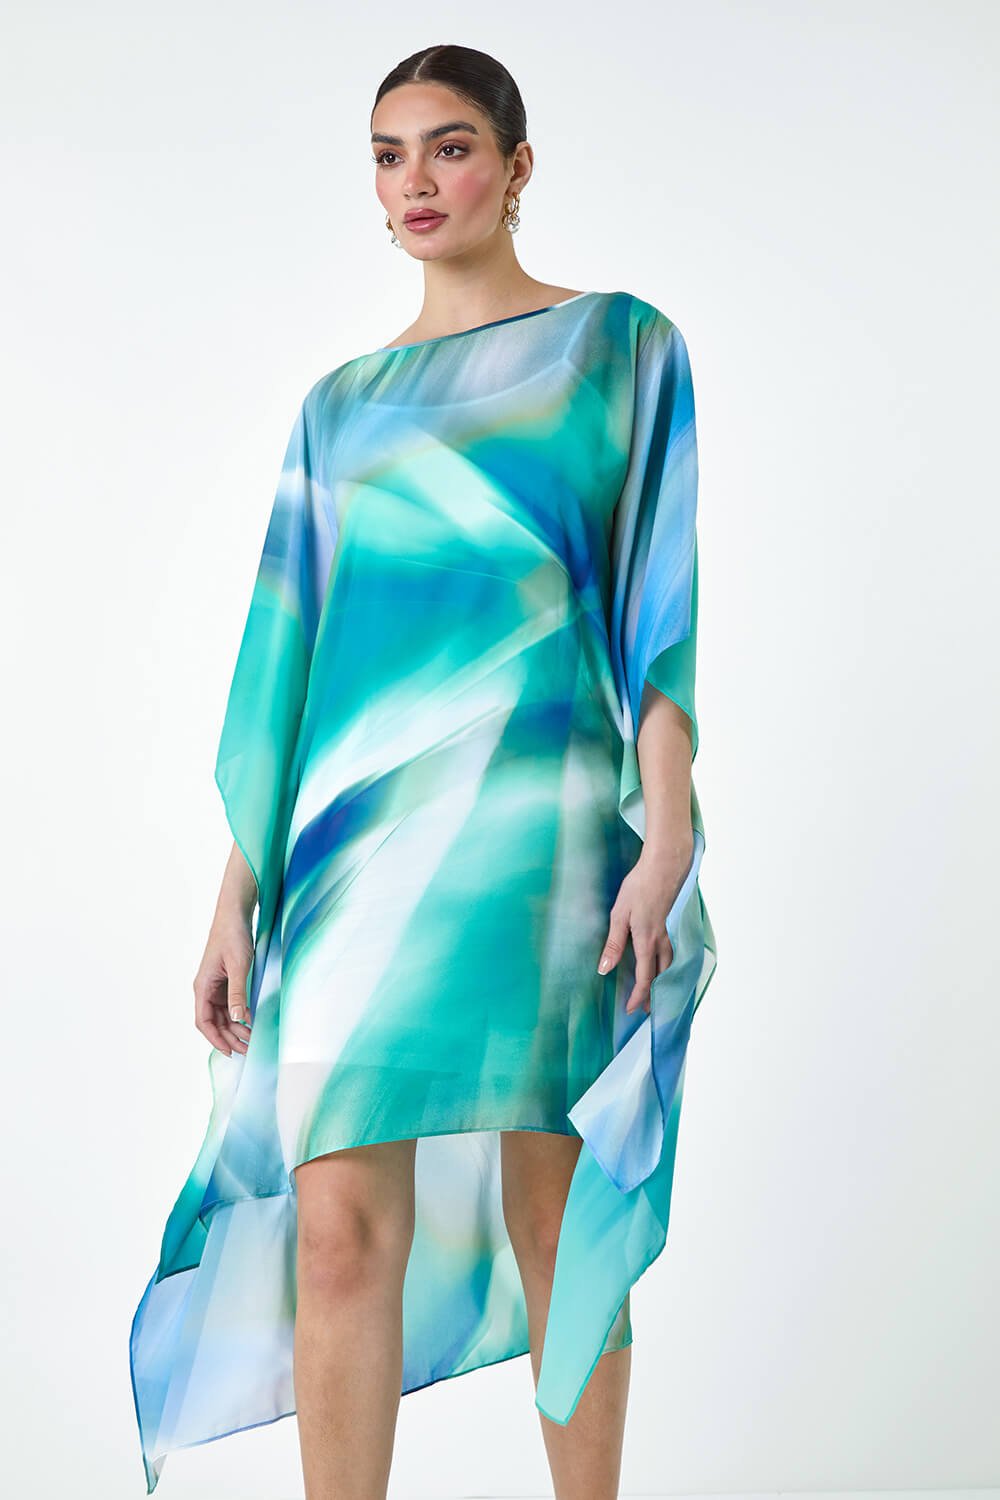 Green Abstract Print Chiffon Draped Tunic Dress, Image 4 of 6